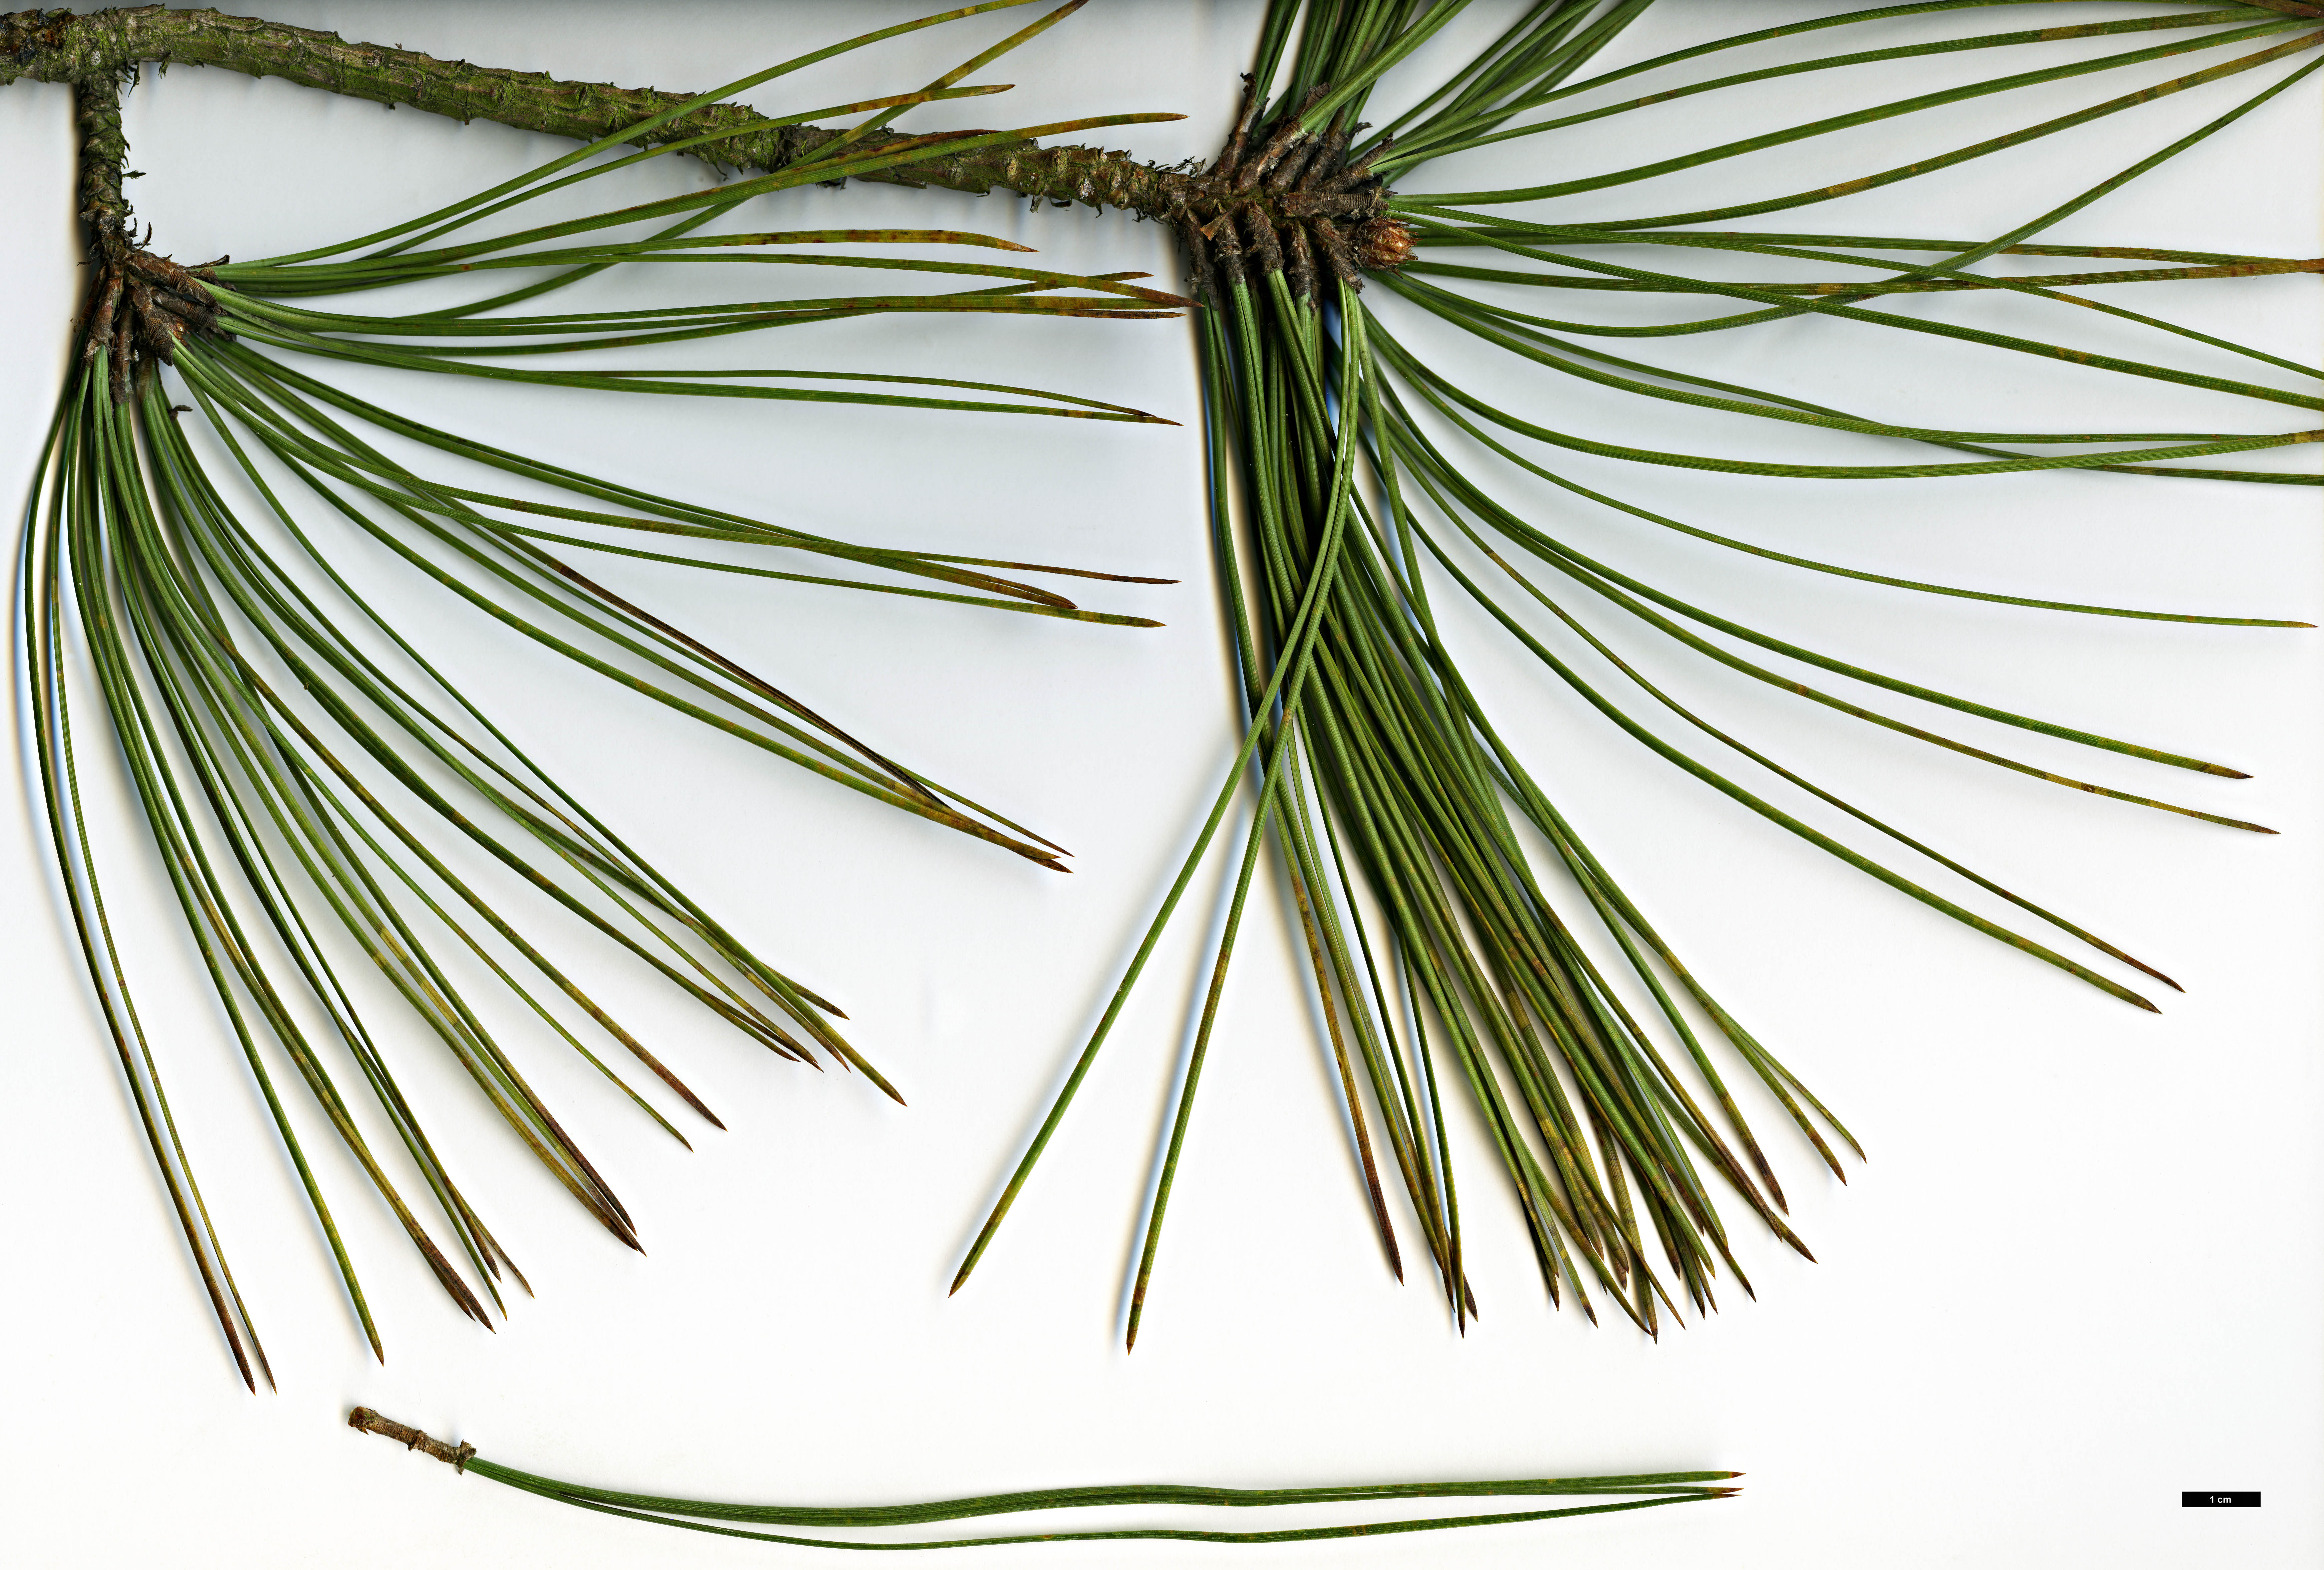 High resolution image: Family: Pinaceae - Genus: Pinus - Taxon: ponderosa